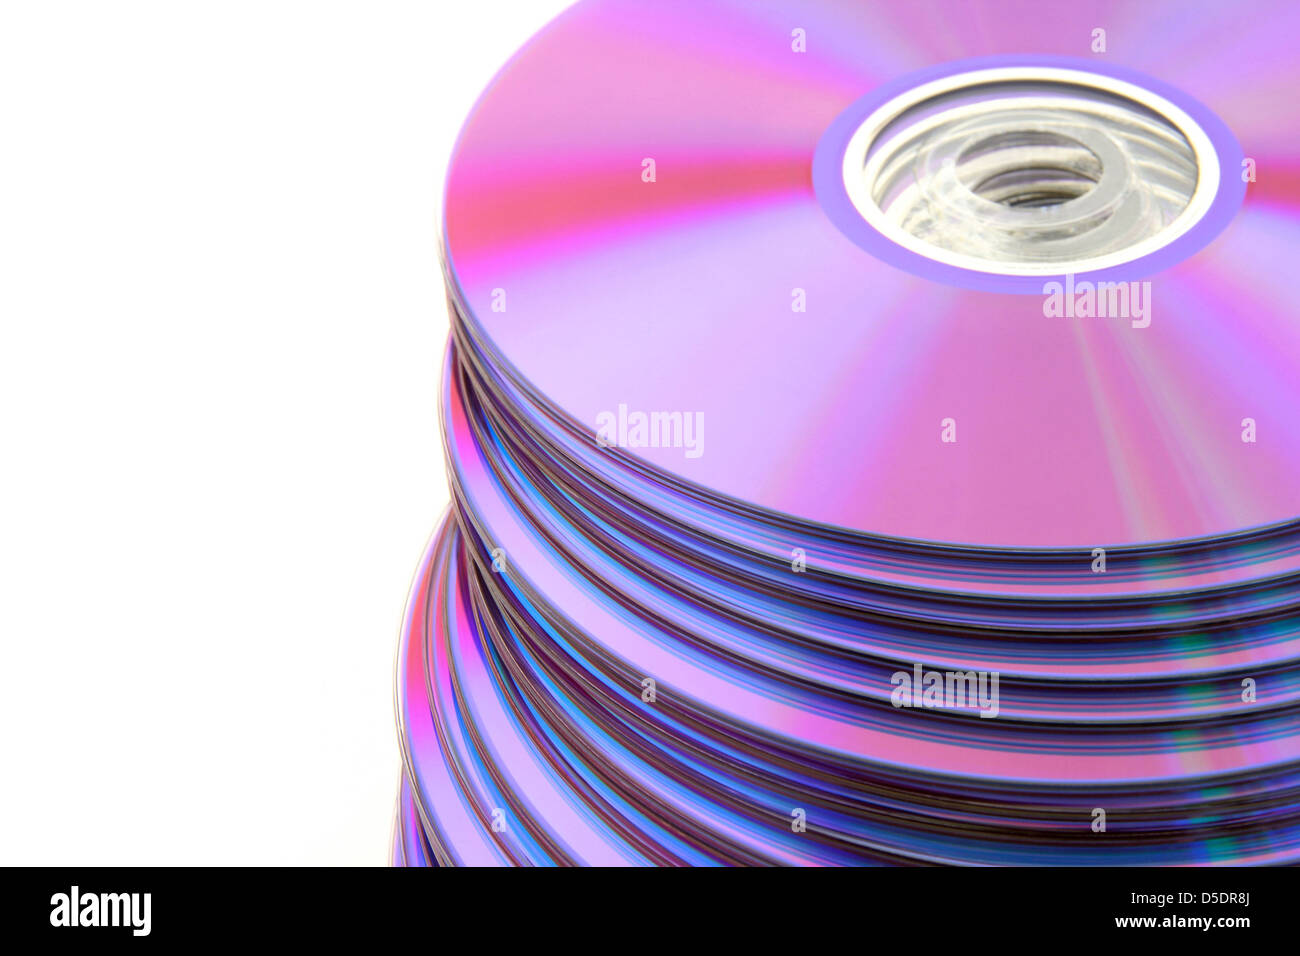 Stapeln bunt DVDs oder CDs, die isoliert auf weißem Hintergrund. Kein Staub. Stockfoto